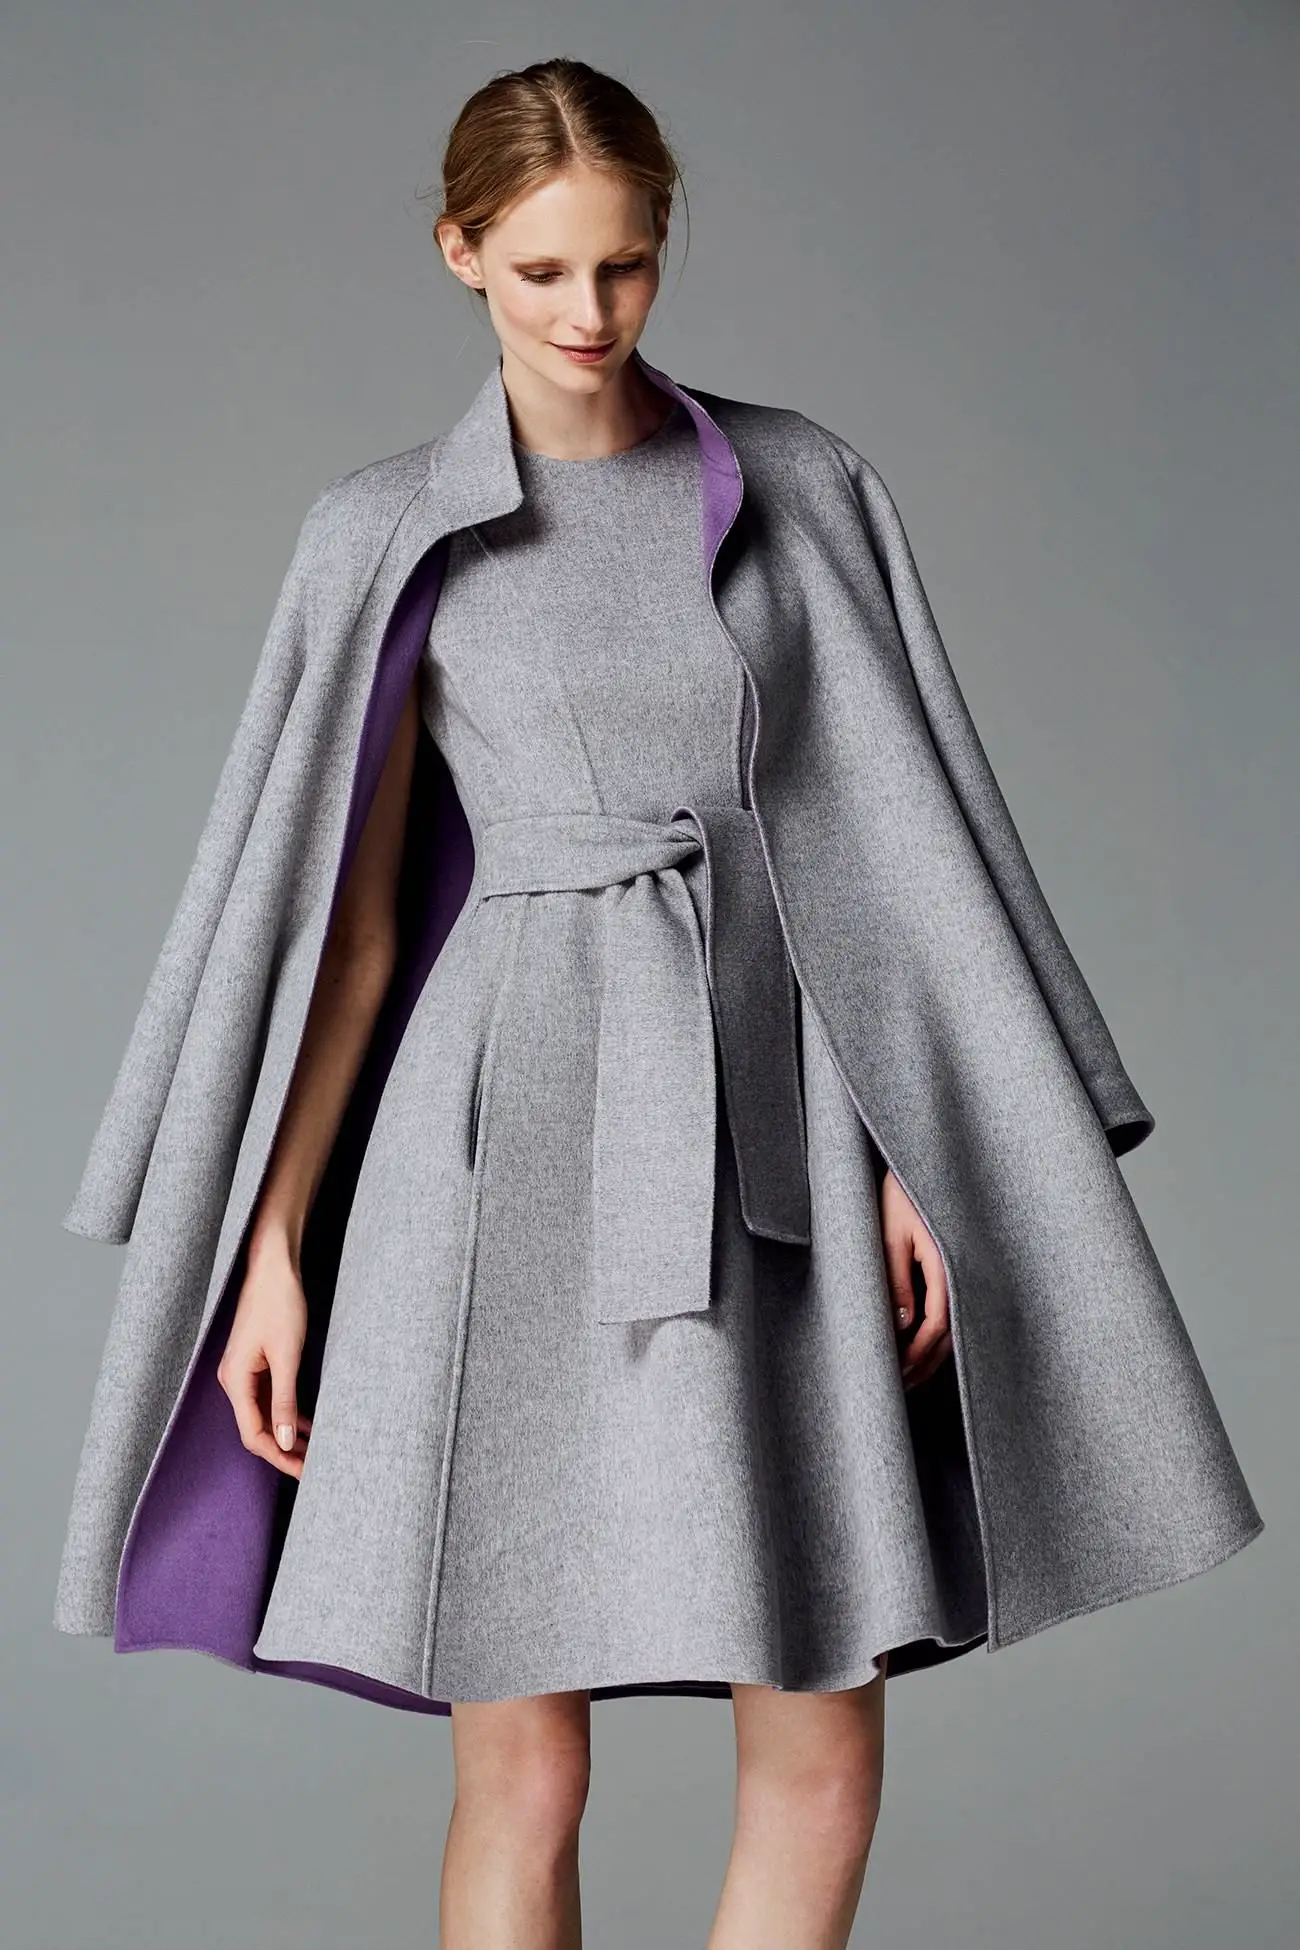 Queen Letizia Carolina Herrera grey double-face wool dress